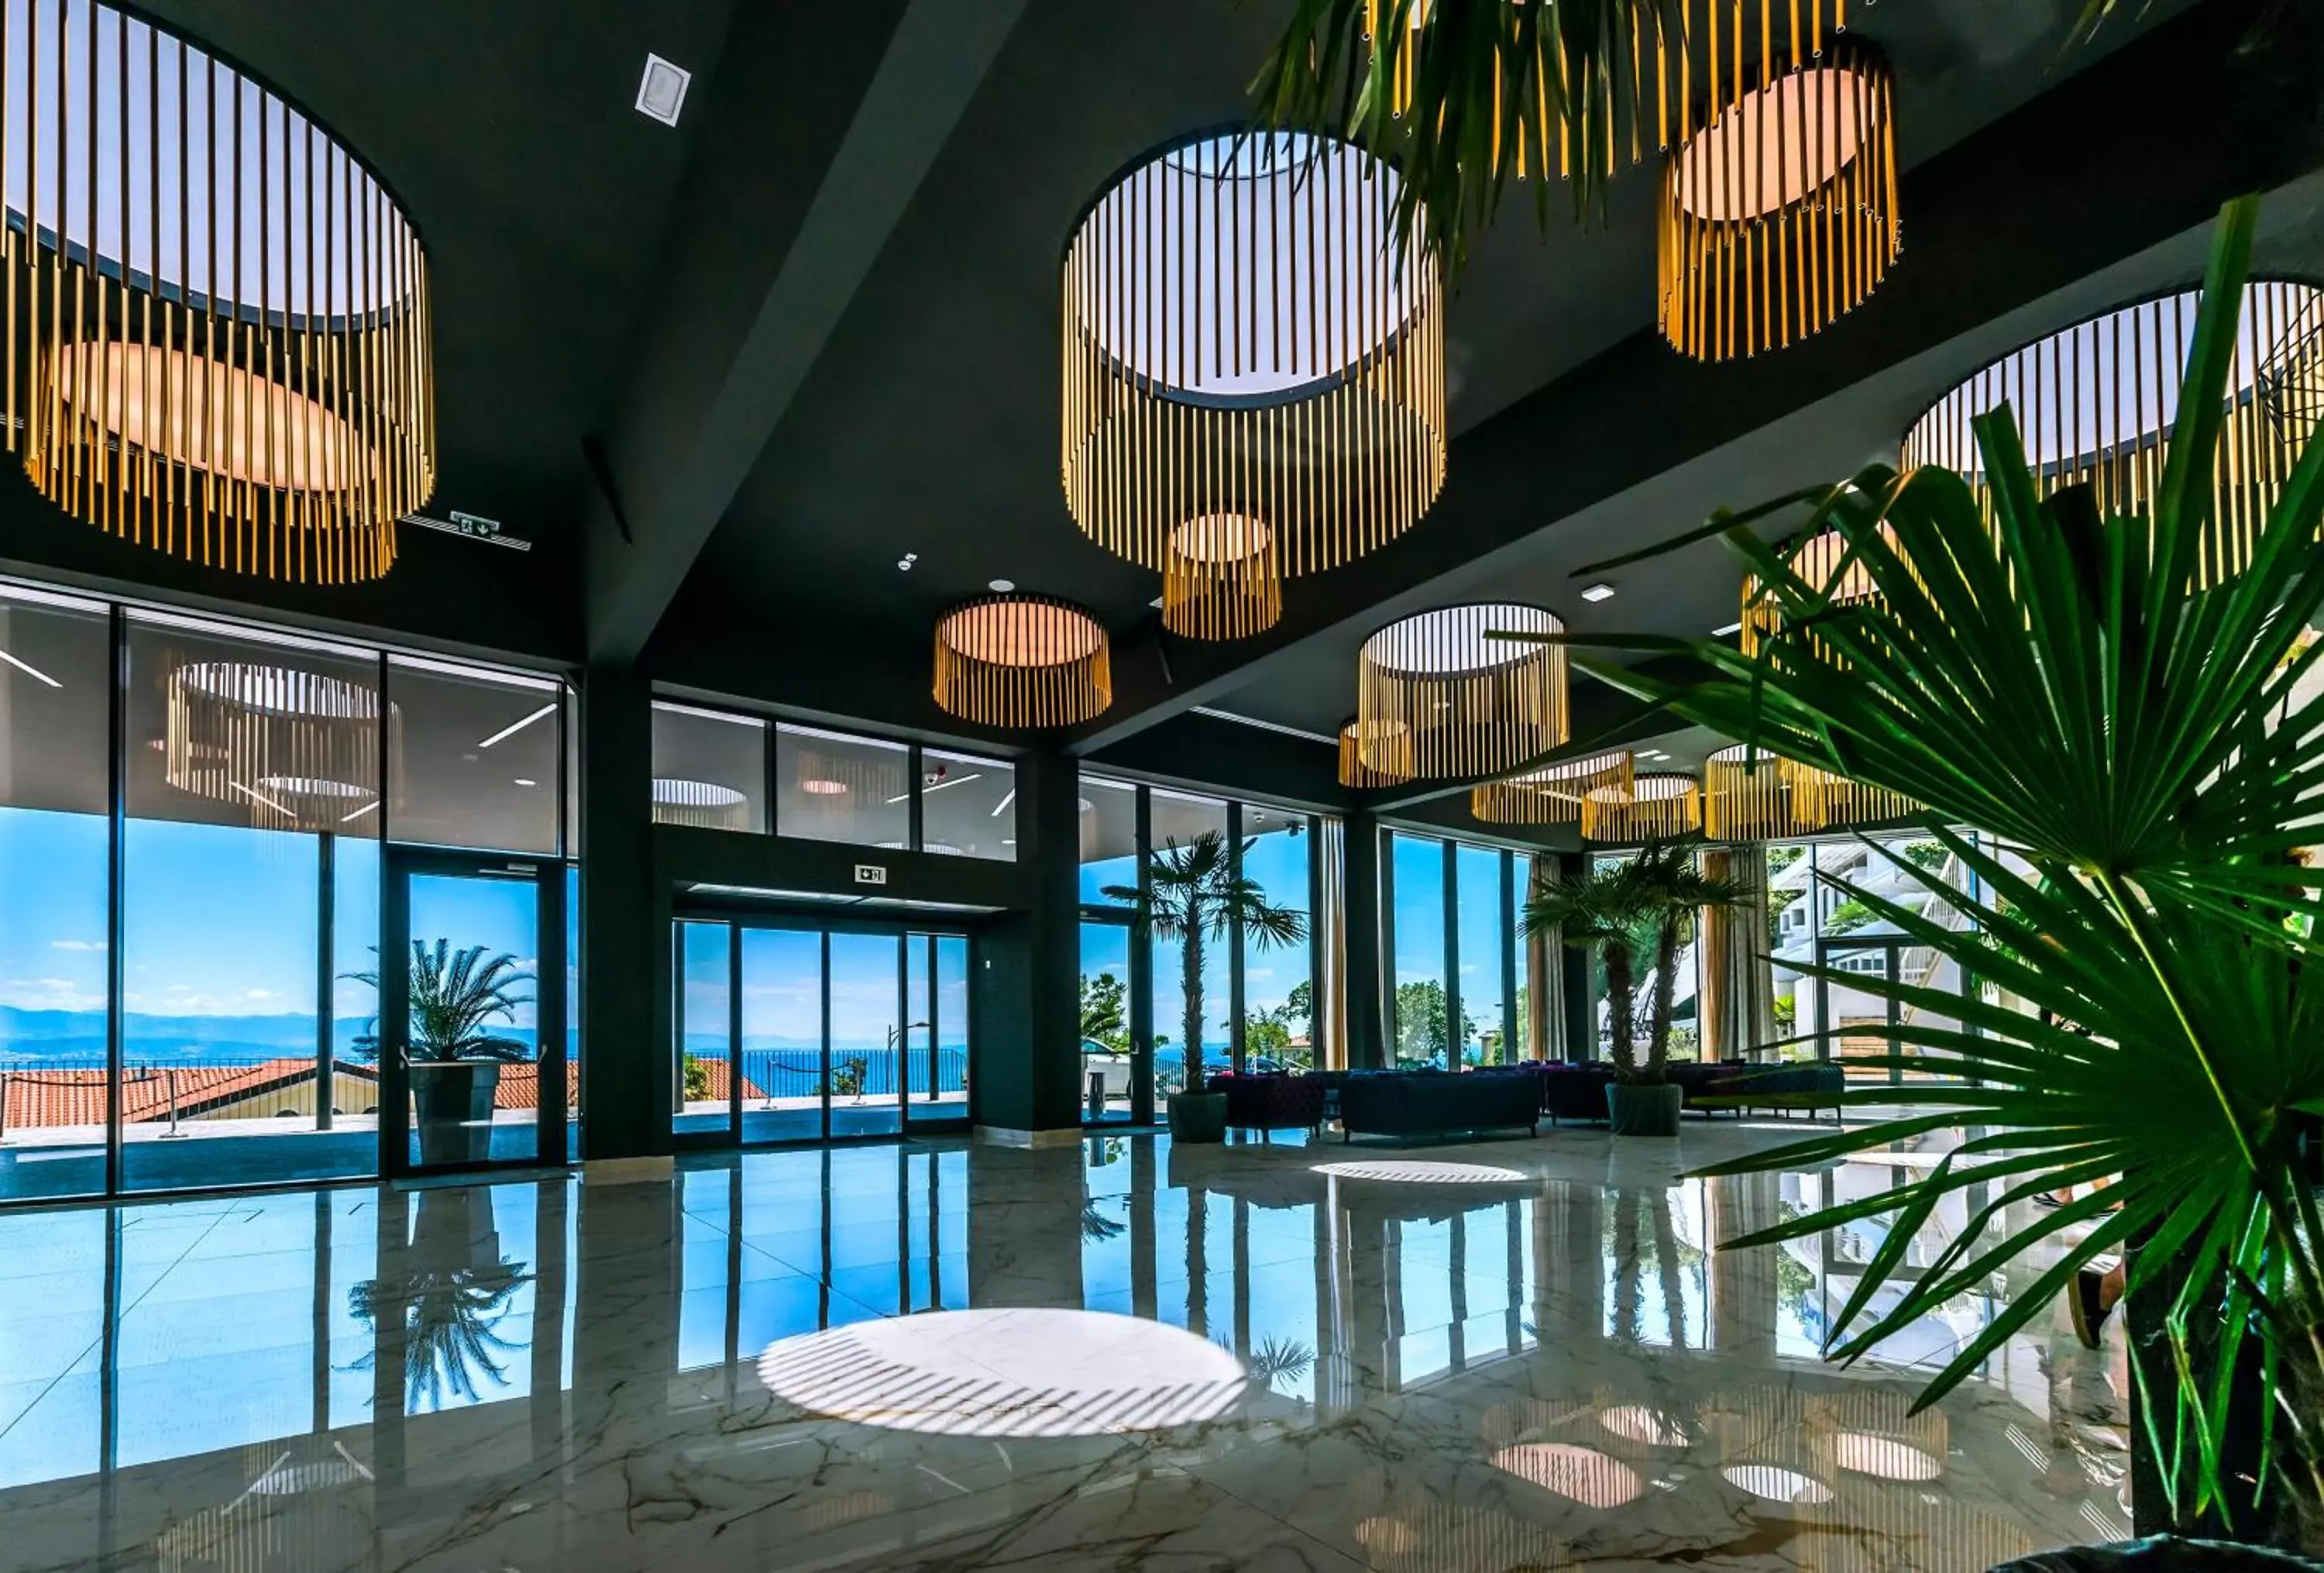 Lobby or reception in Grand Hotel Adriatic